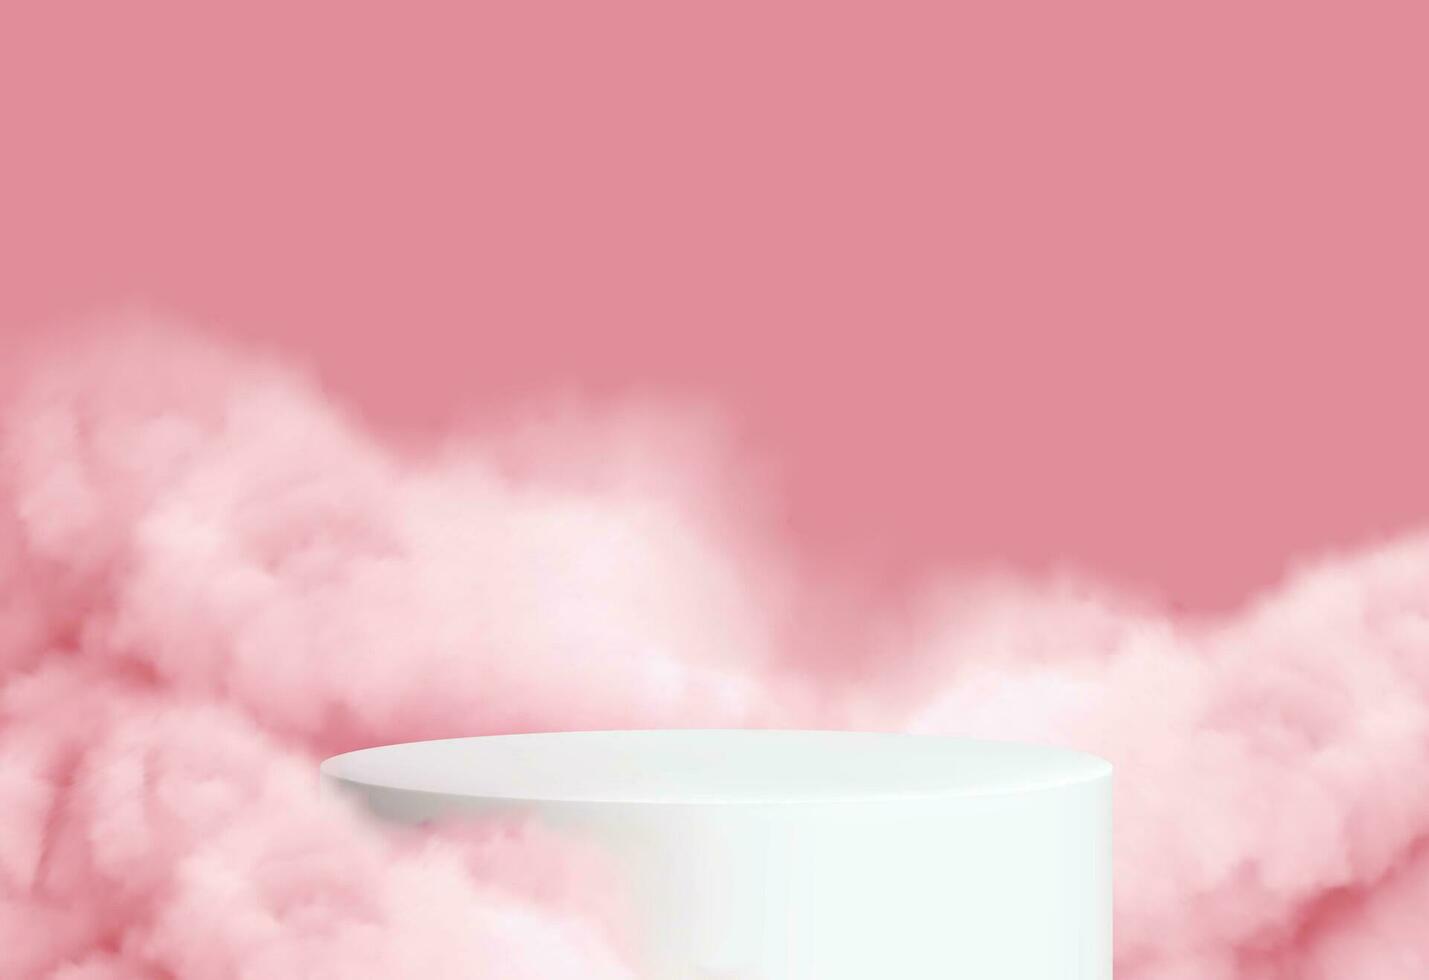 roze achtergrond met een Product podium omringd door roze wolken, gratis vector. vector